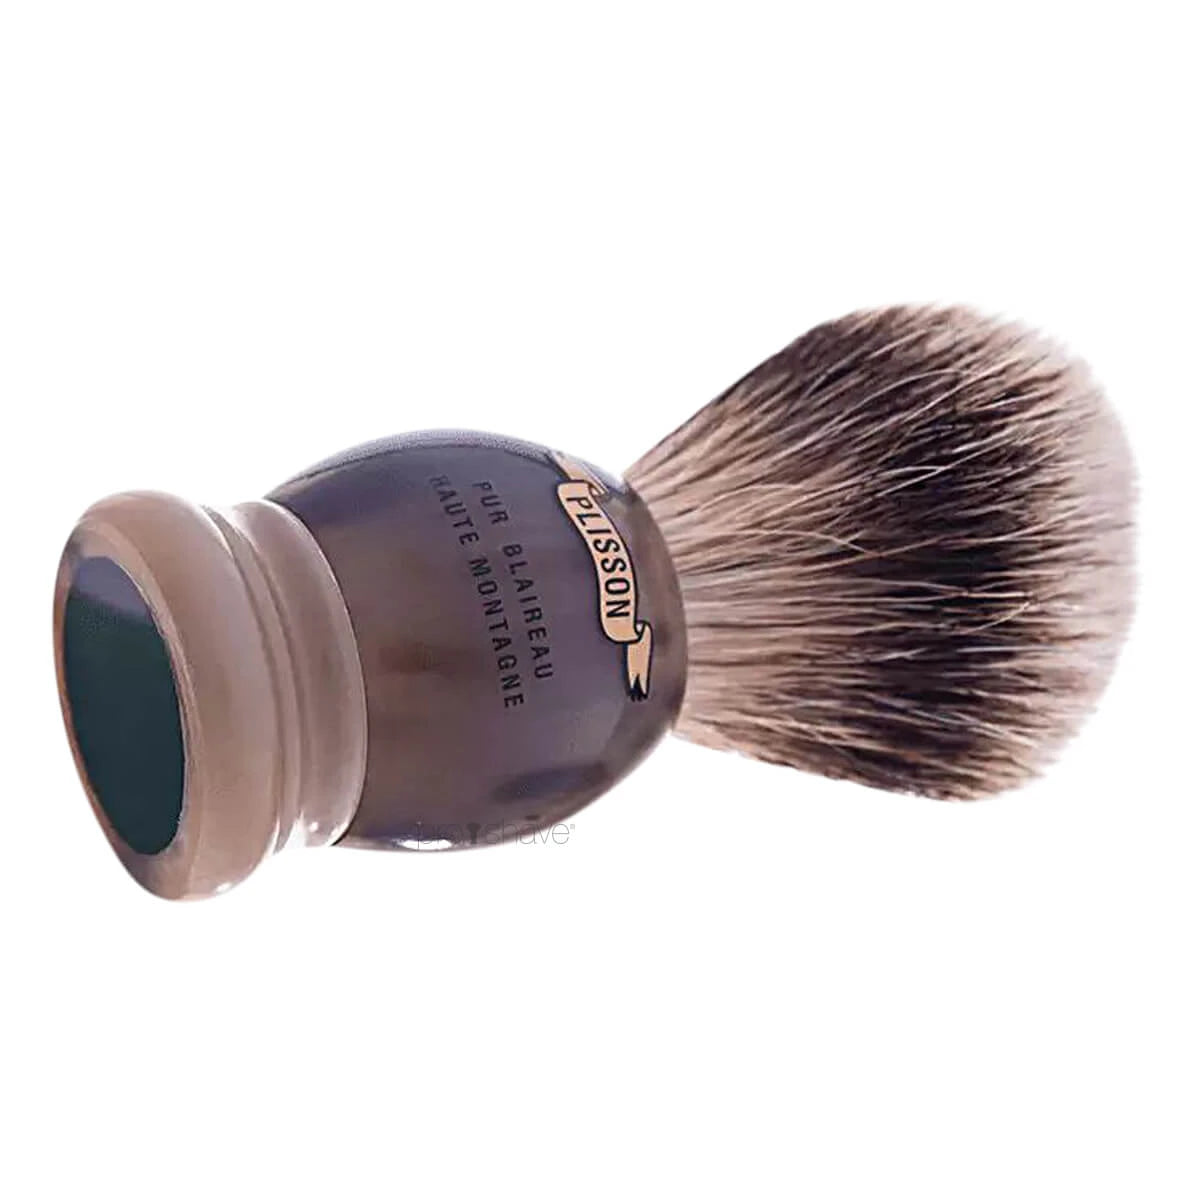 Plisson Shaving Brush, High Mountain White Badger & Genuine Horn- Size 18